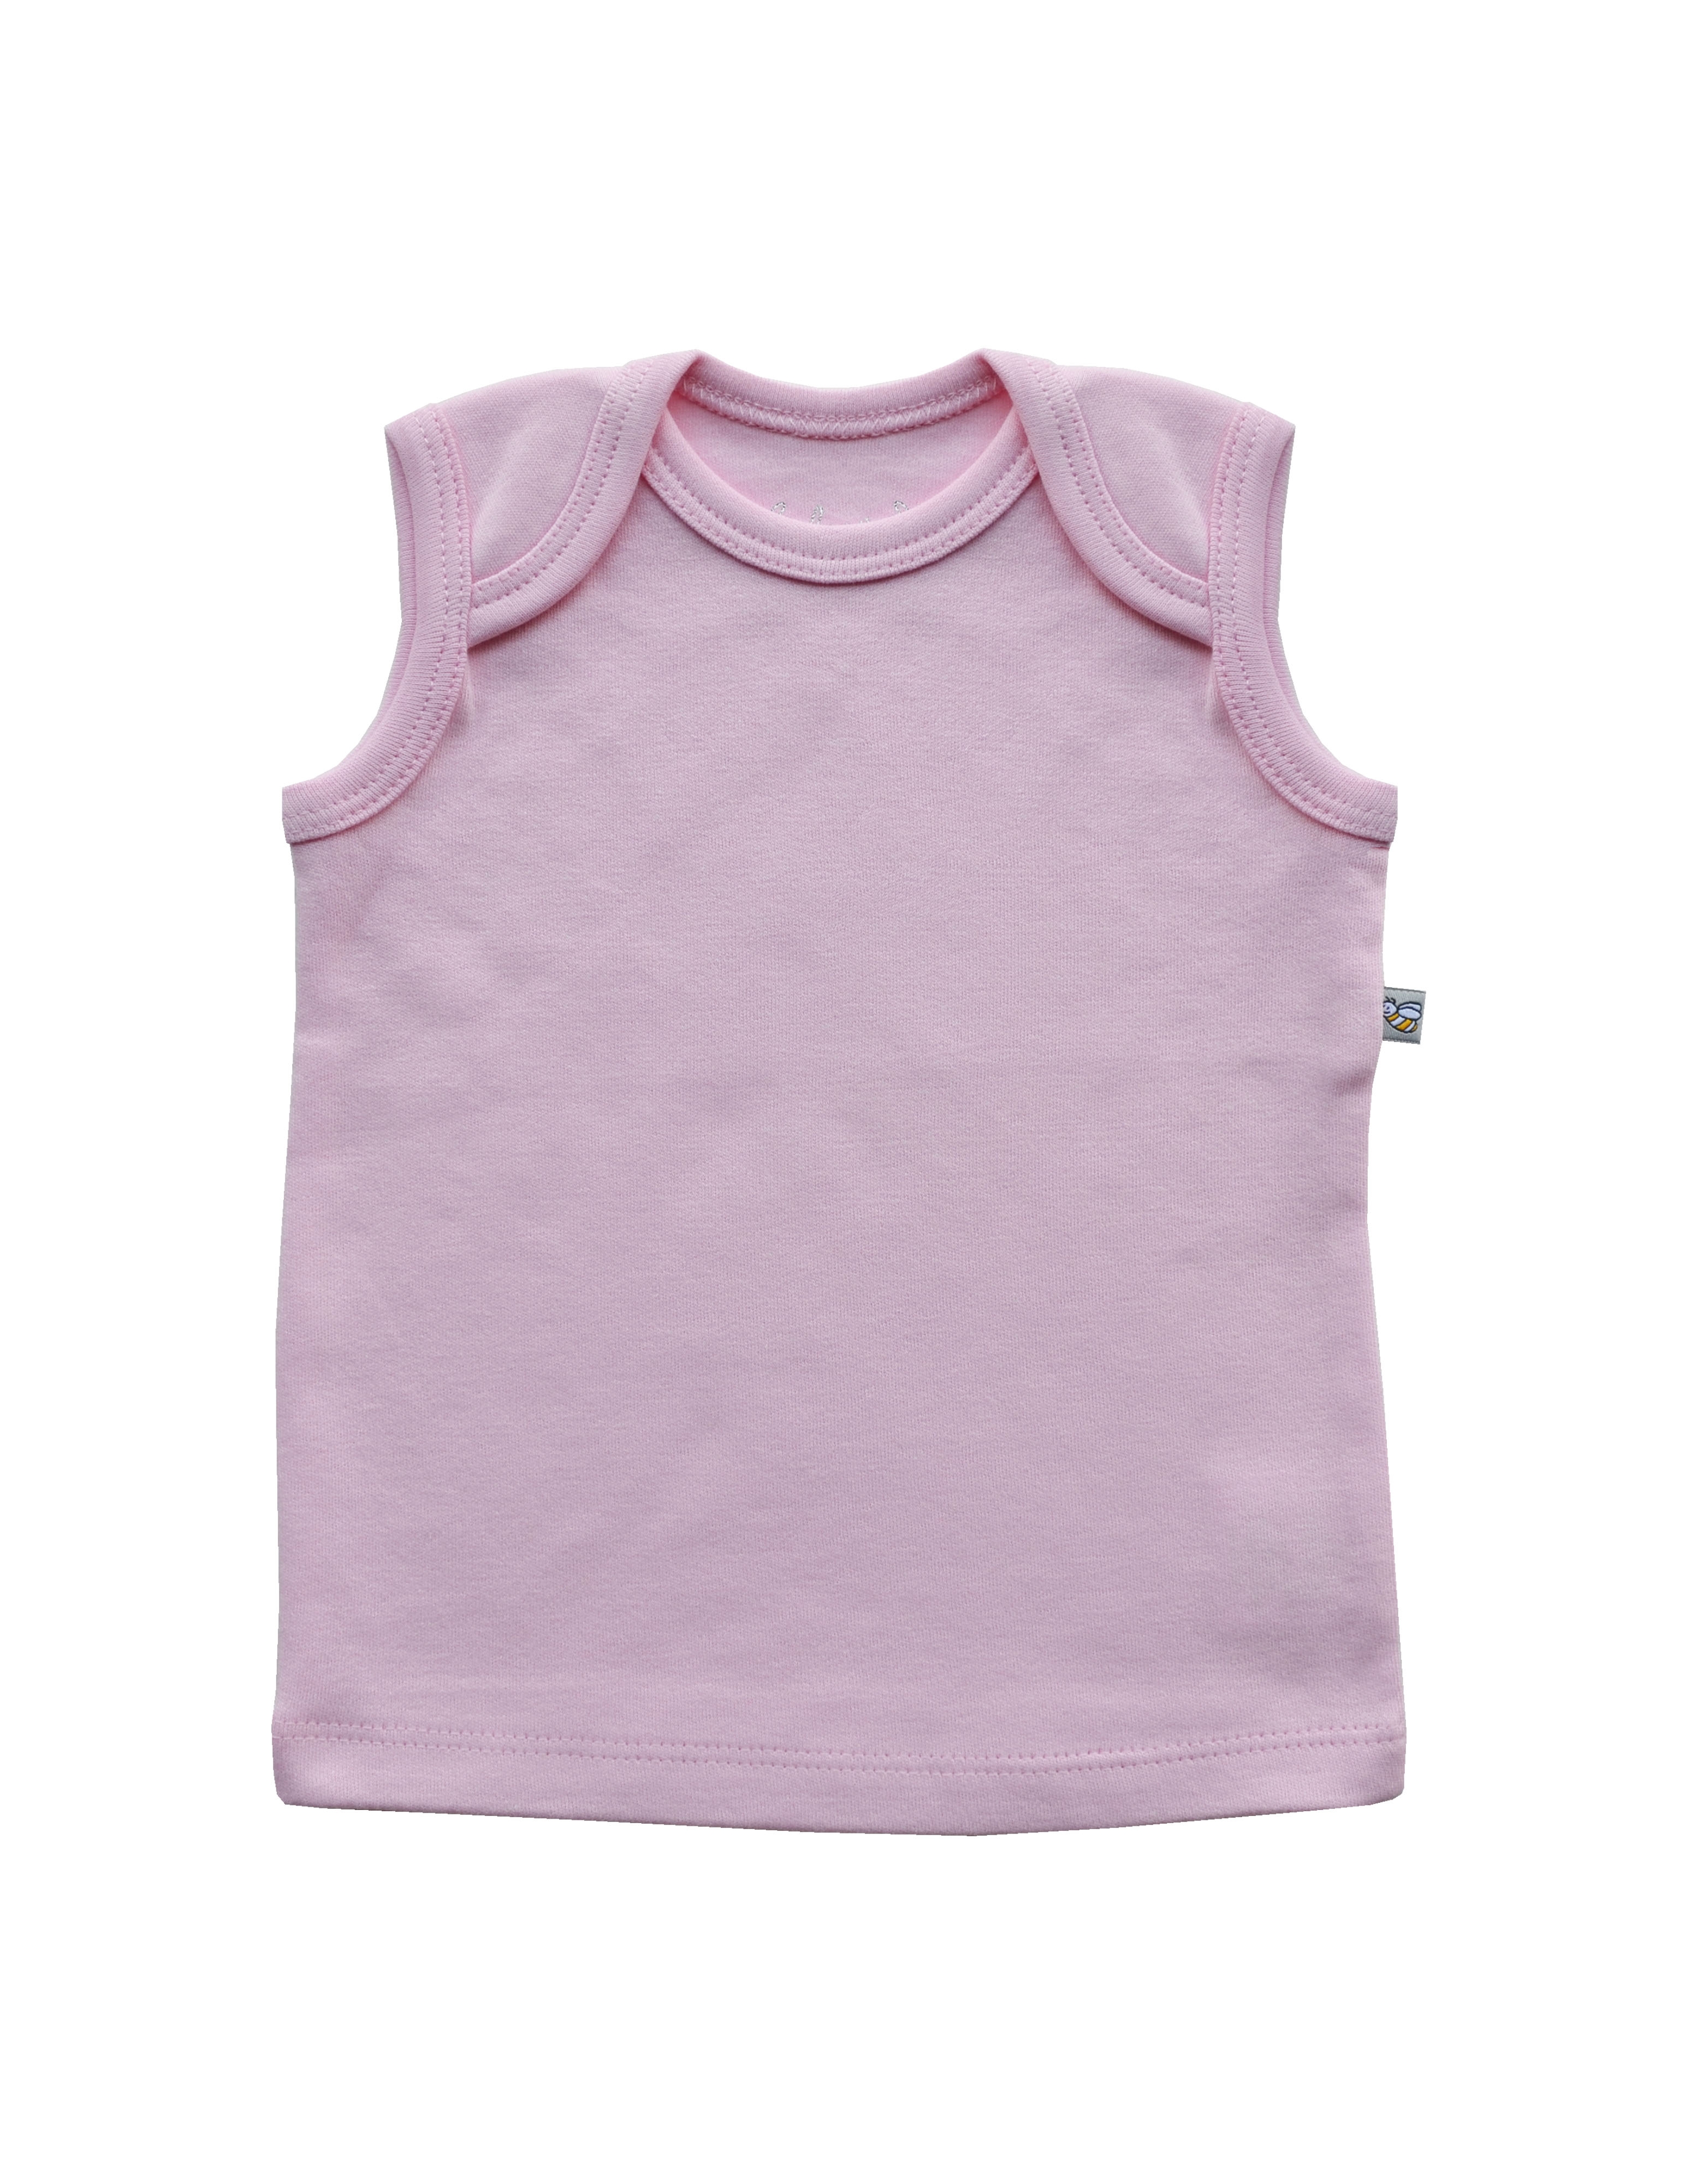 Pink Vest (100% Cotton Interlock Biowash)